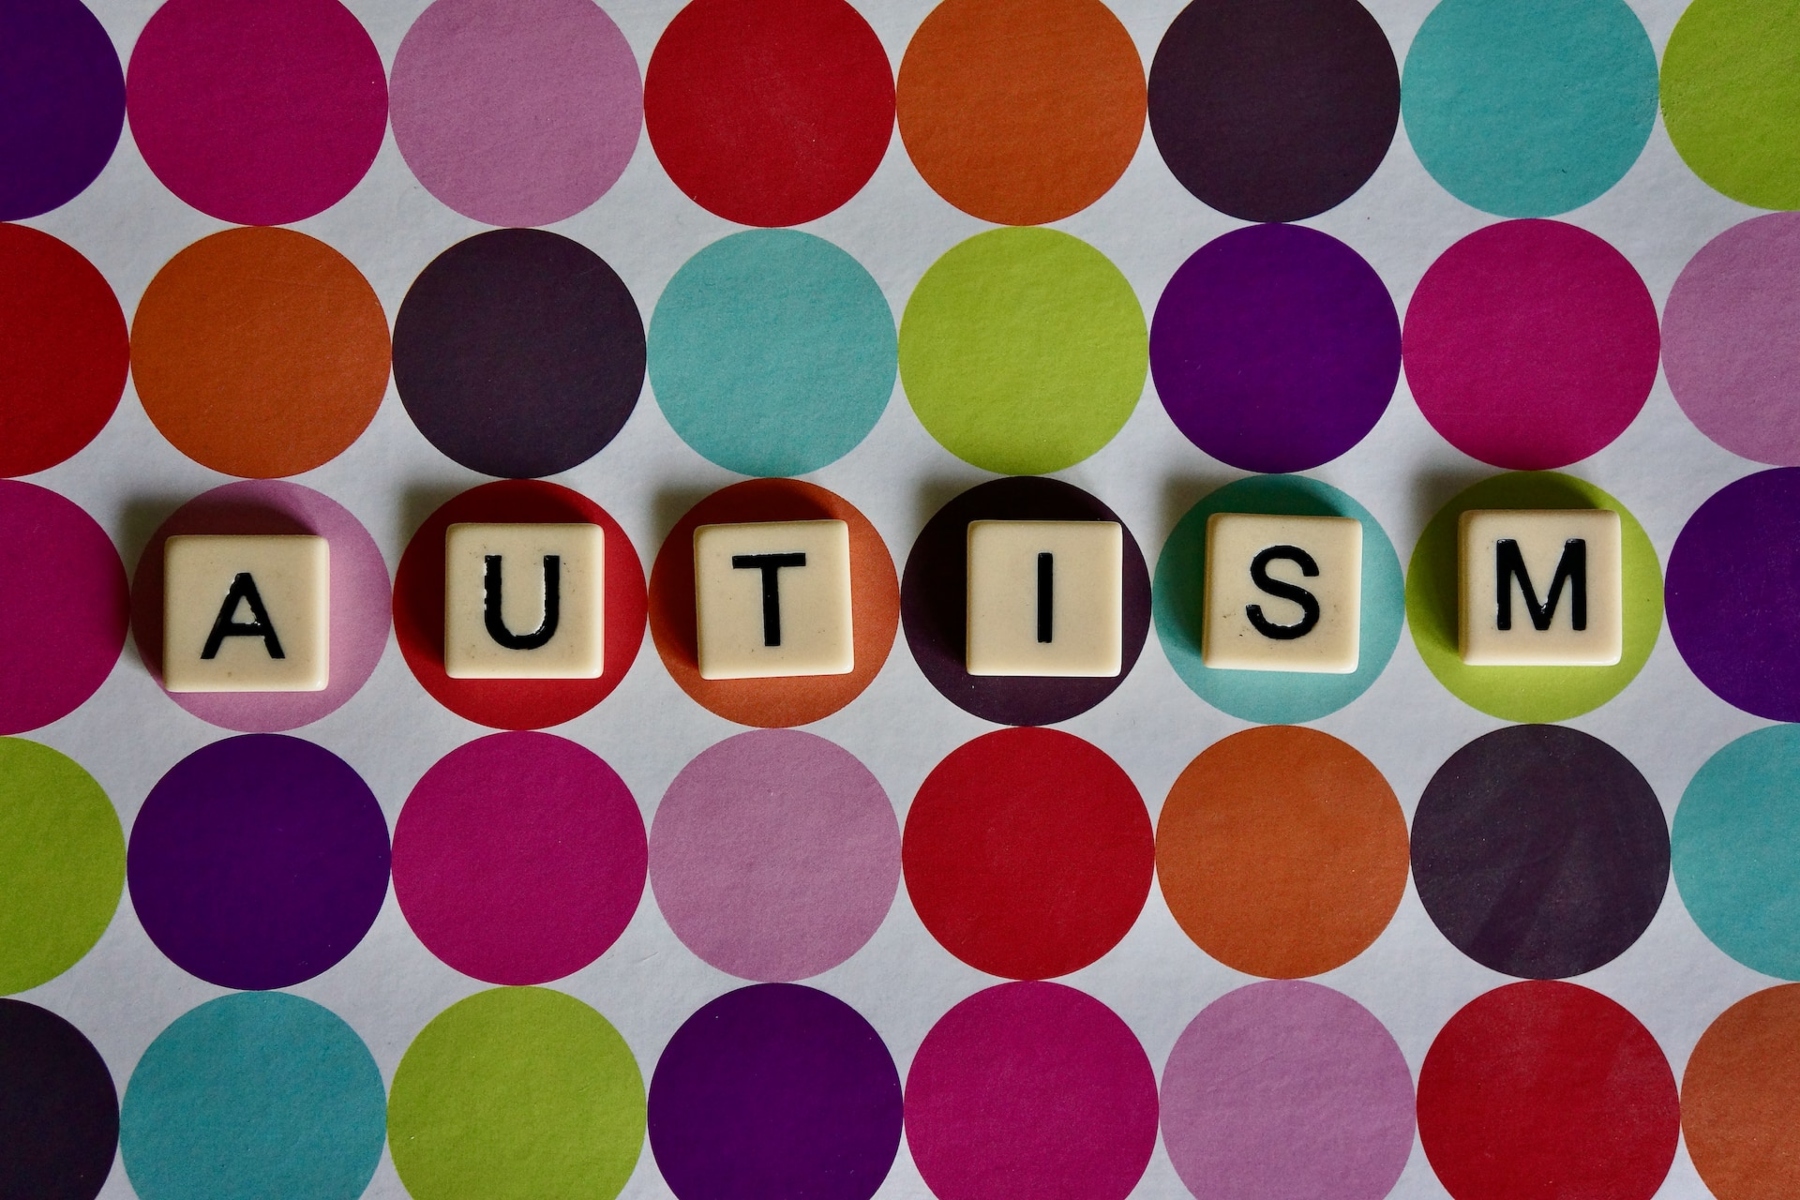 Αυτισμός οθόνες: Συνδέονται ο χρόνος που περνούν στην οθόνη τα παιδιά με τον αυτισμό;